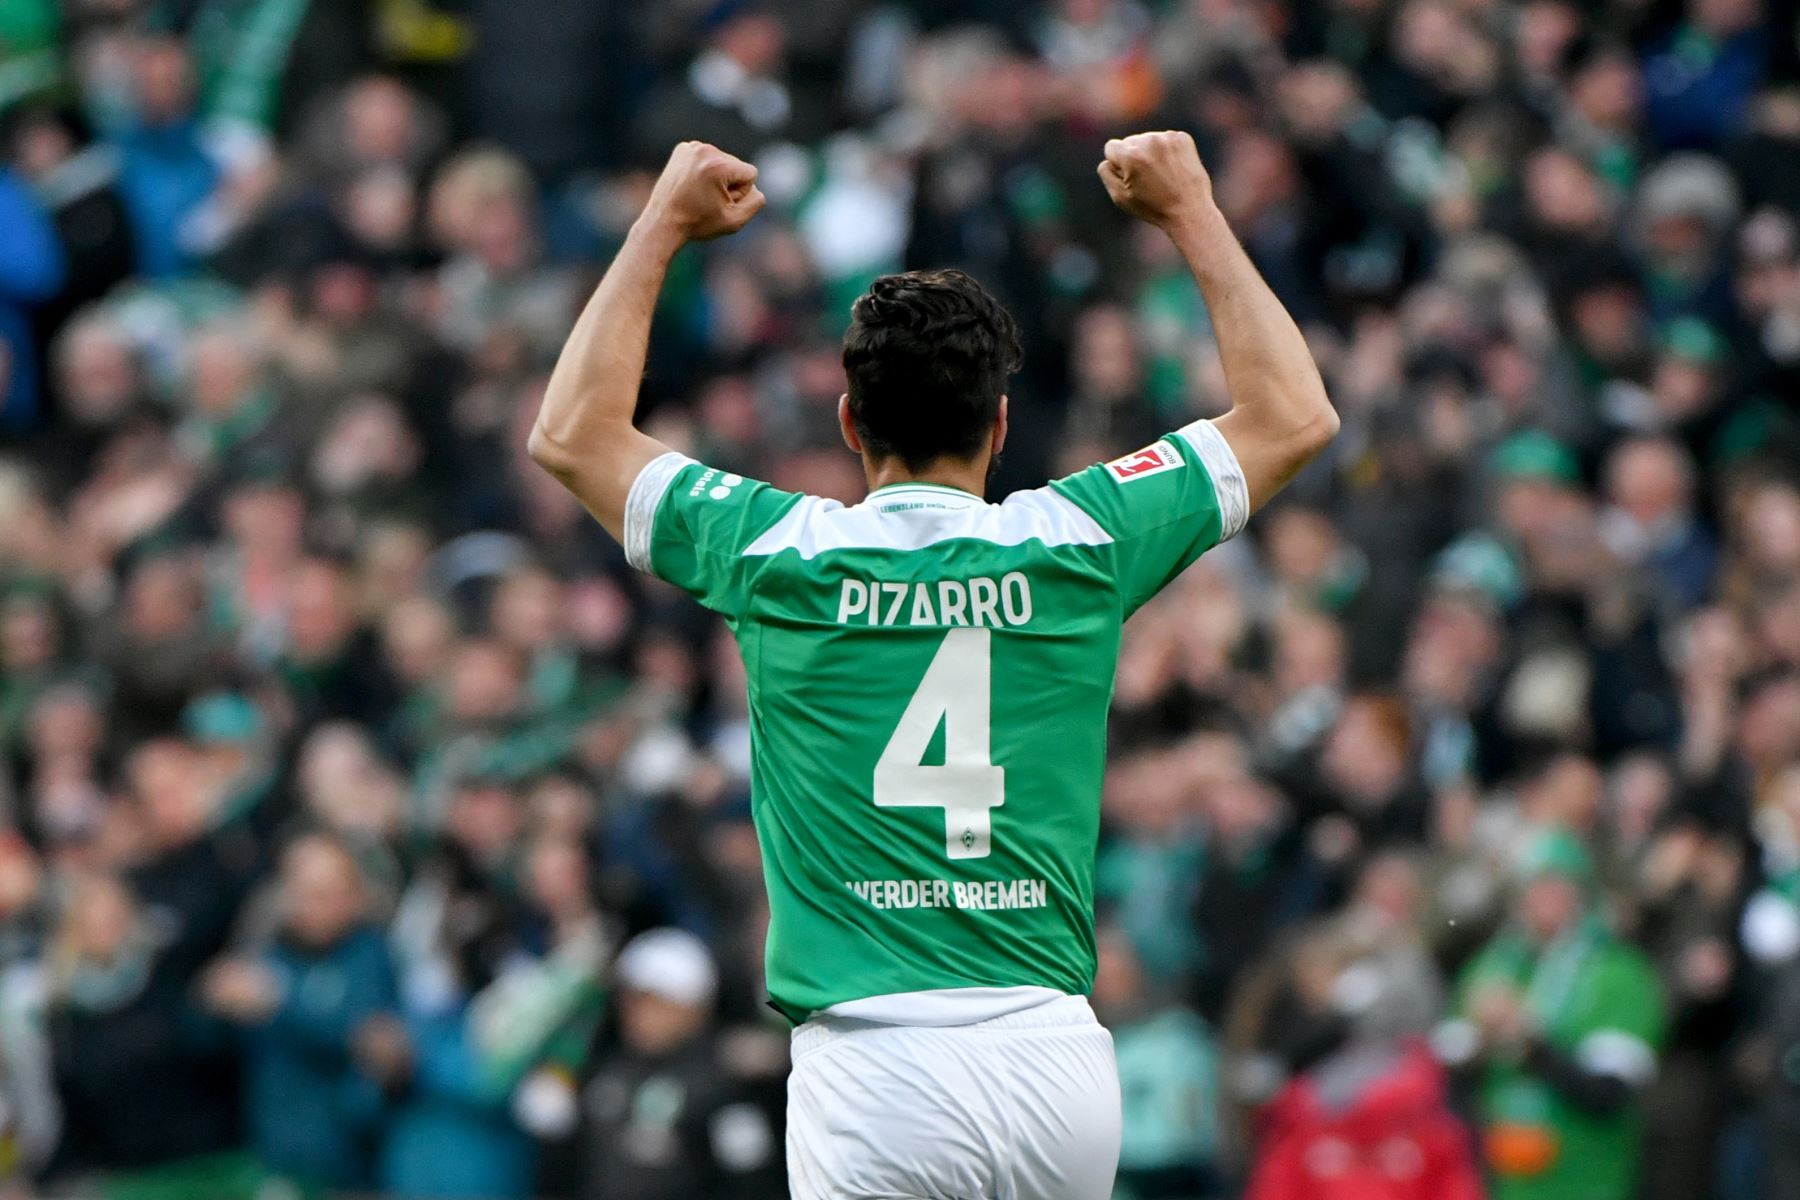 El delantero peruano de Bremen, Claudio Pizarro, celebra después de anotar durante el partido de fútbol de primera división de la Bundesliga alemana Werder Bremen - BVB Borussia Dortmund en Bremen.
Foto:AFP